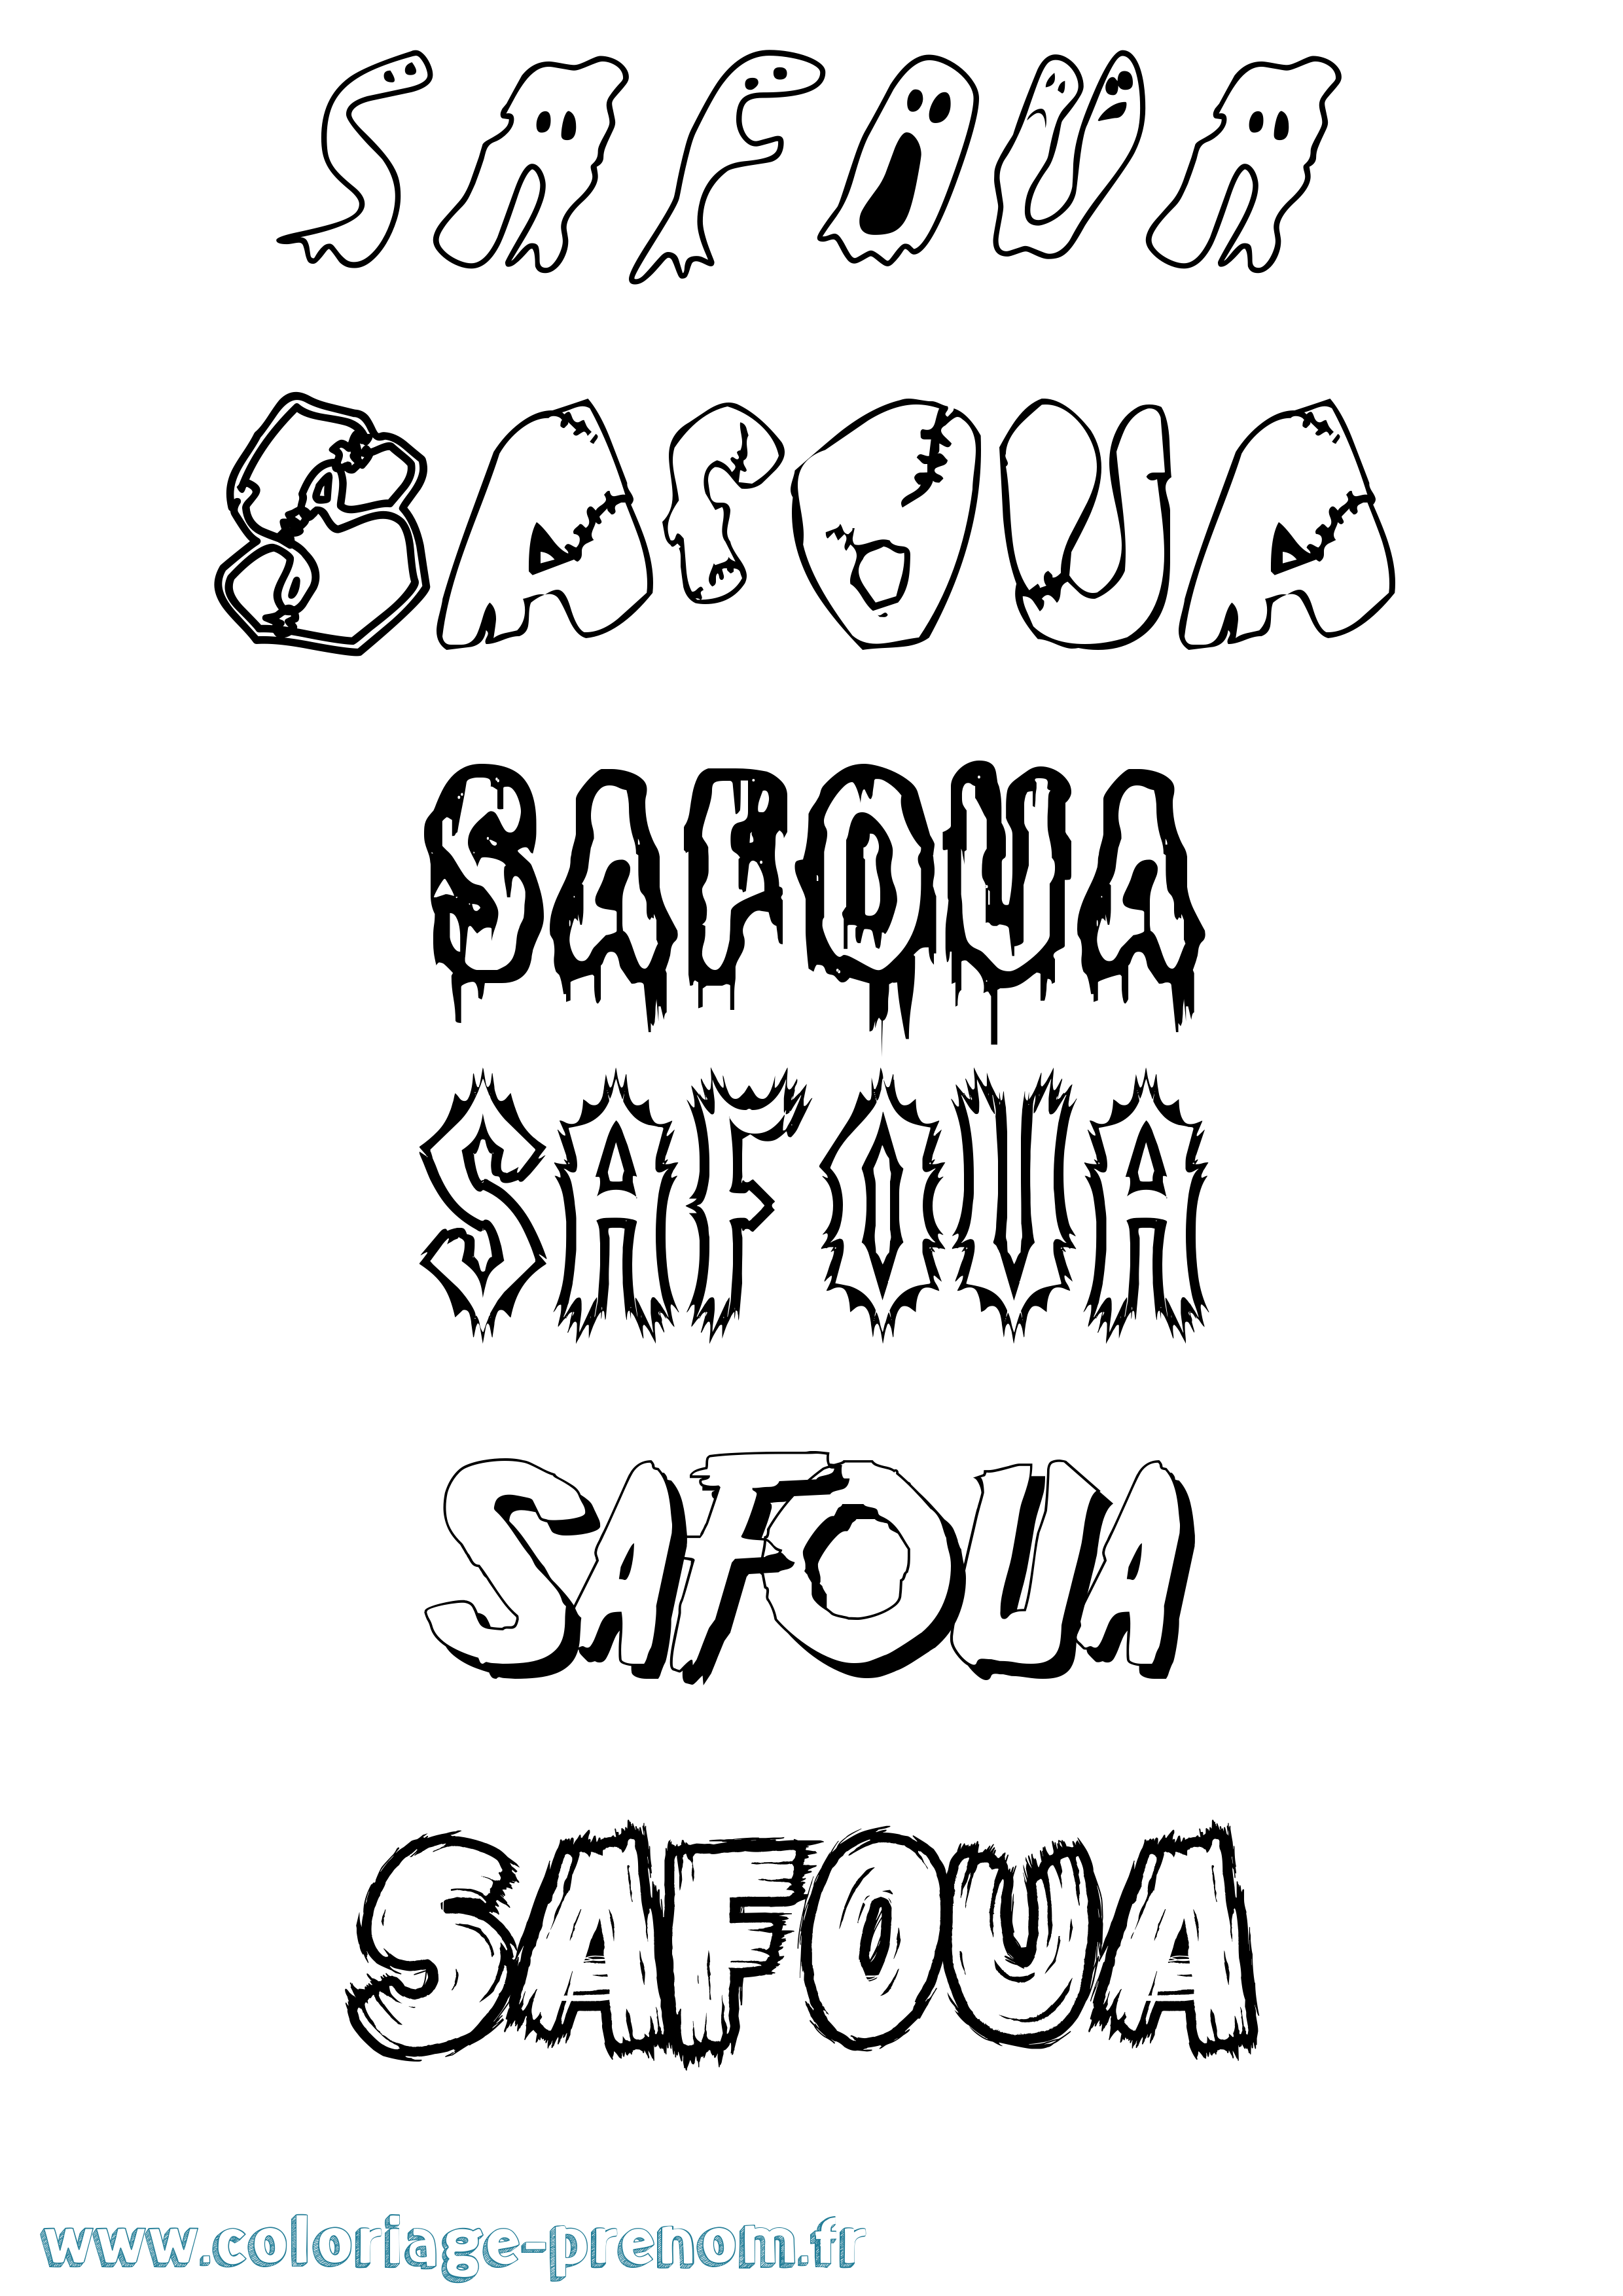 Coloriage prénom Safoua Frisson